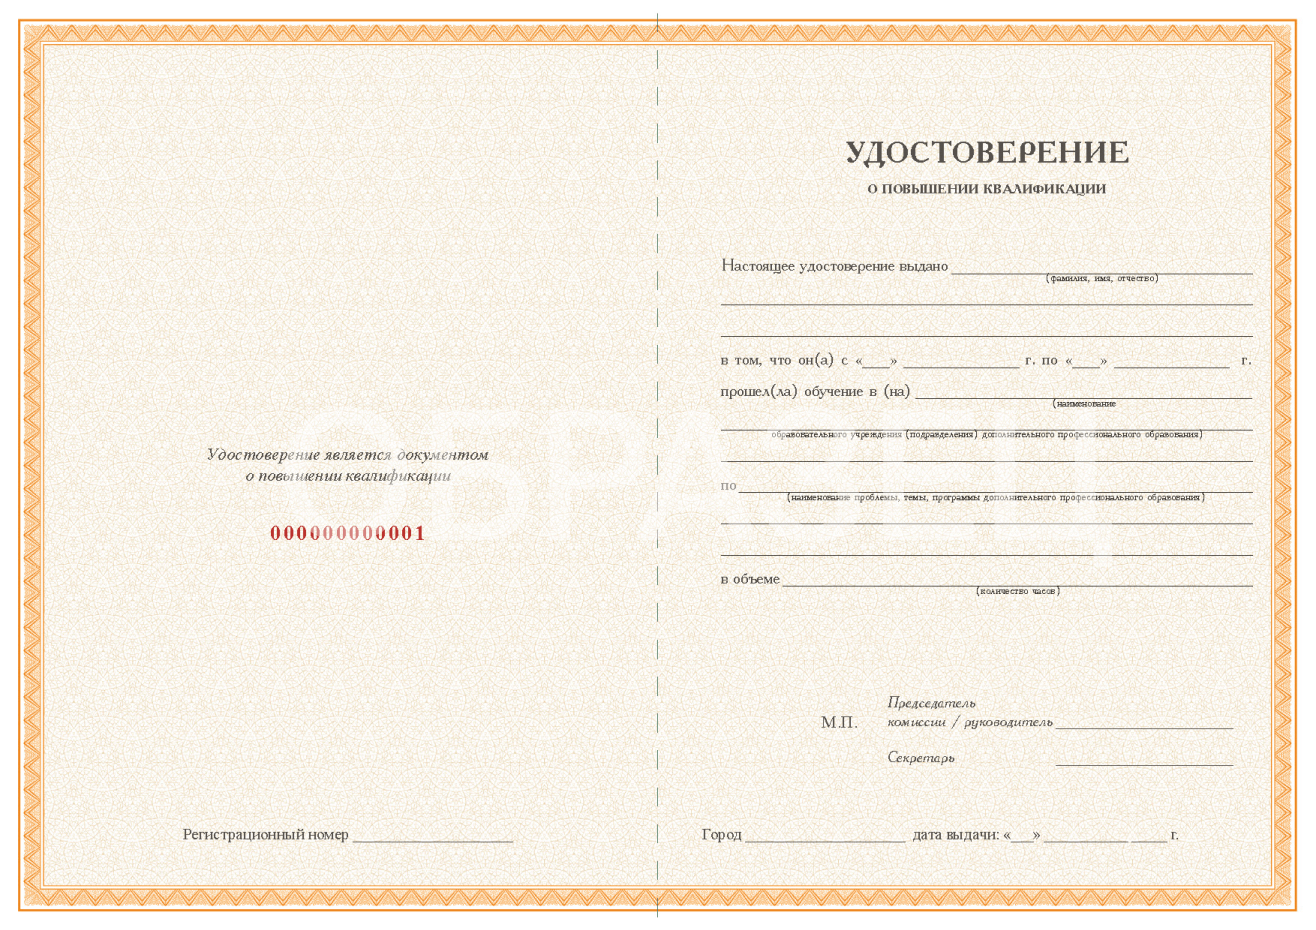 Вариант диплома